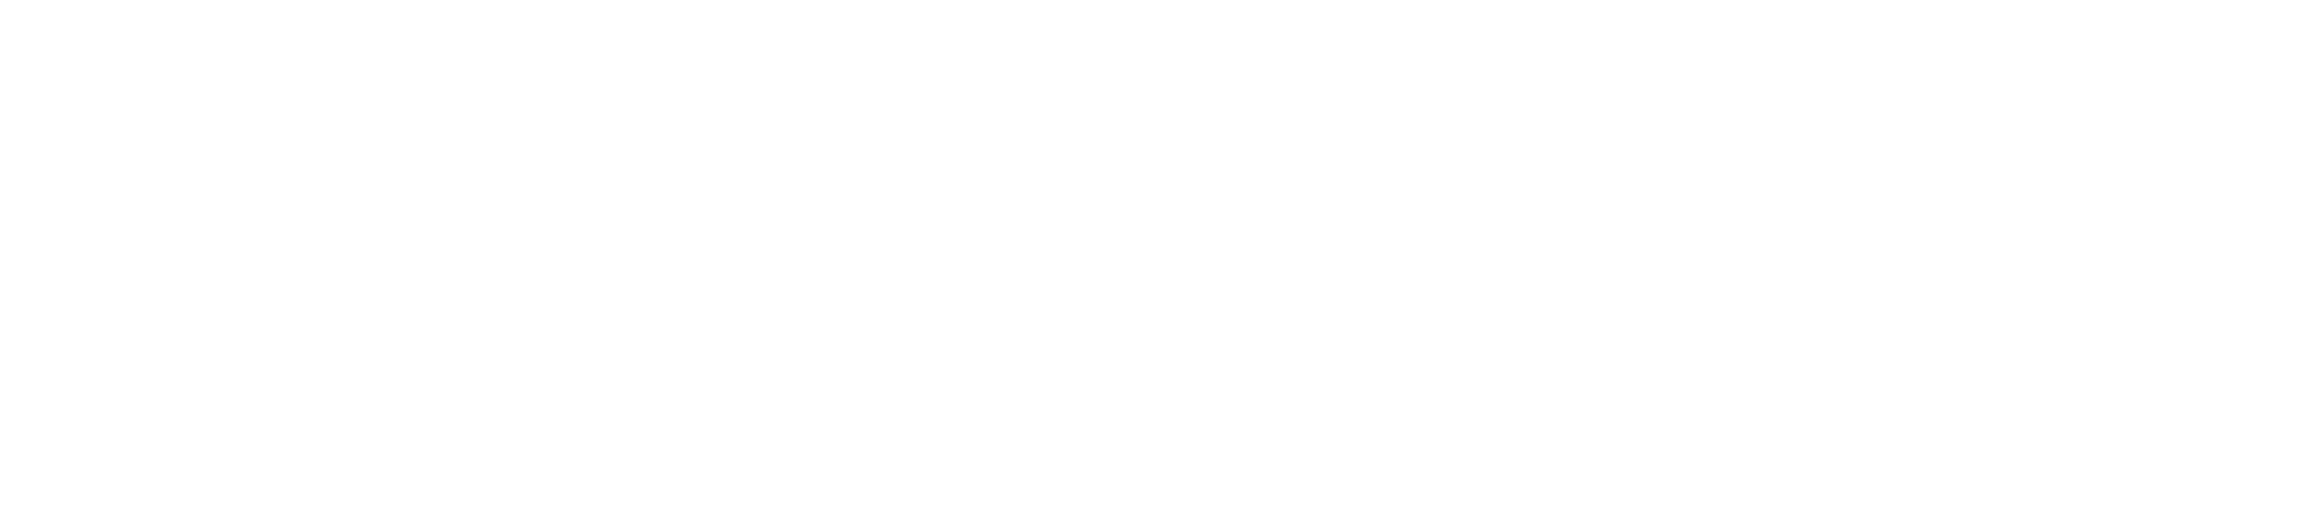 Roth-Hilpoltsteiner Volkszeitung.